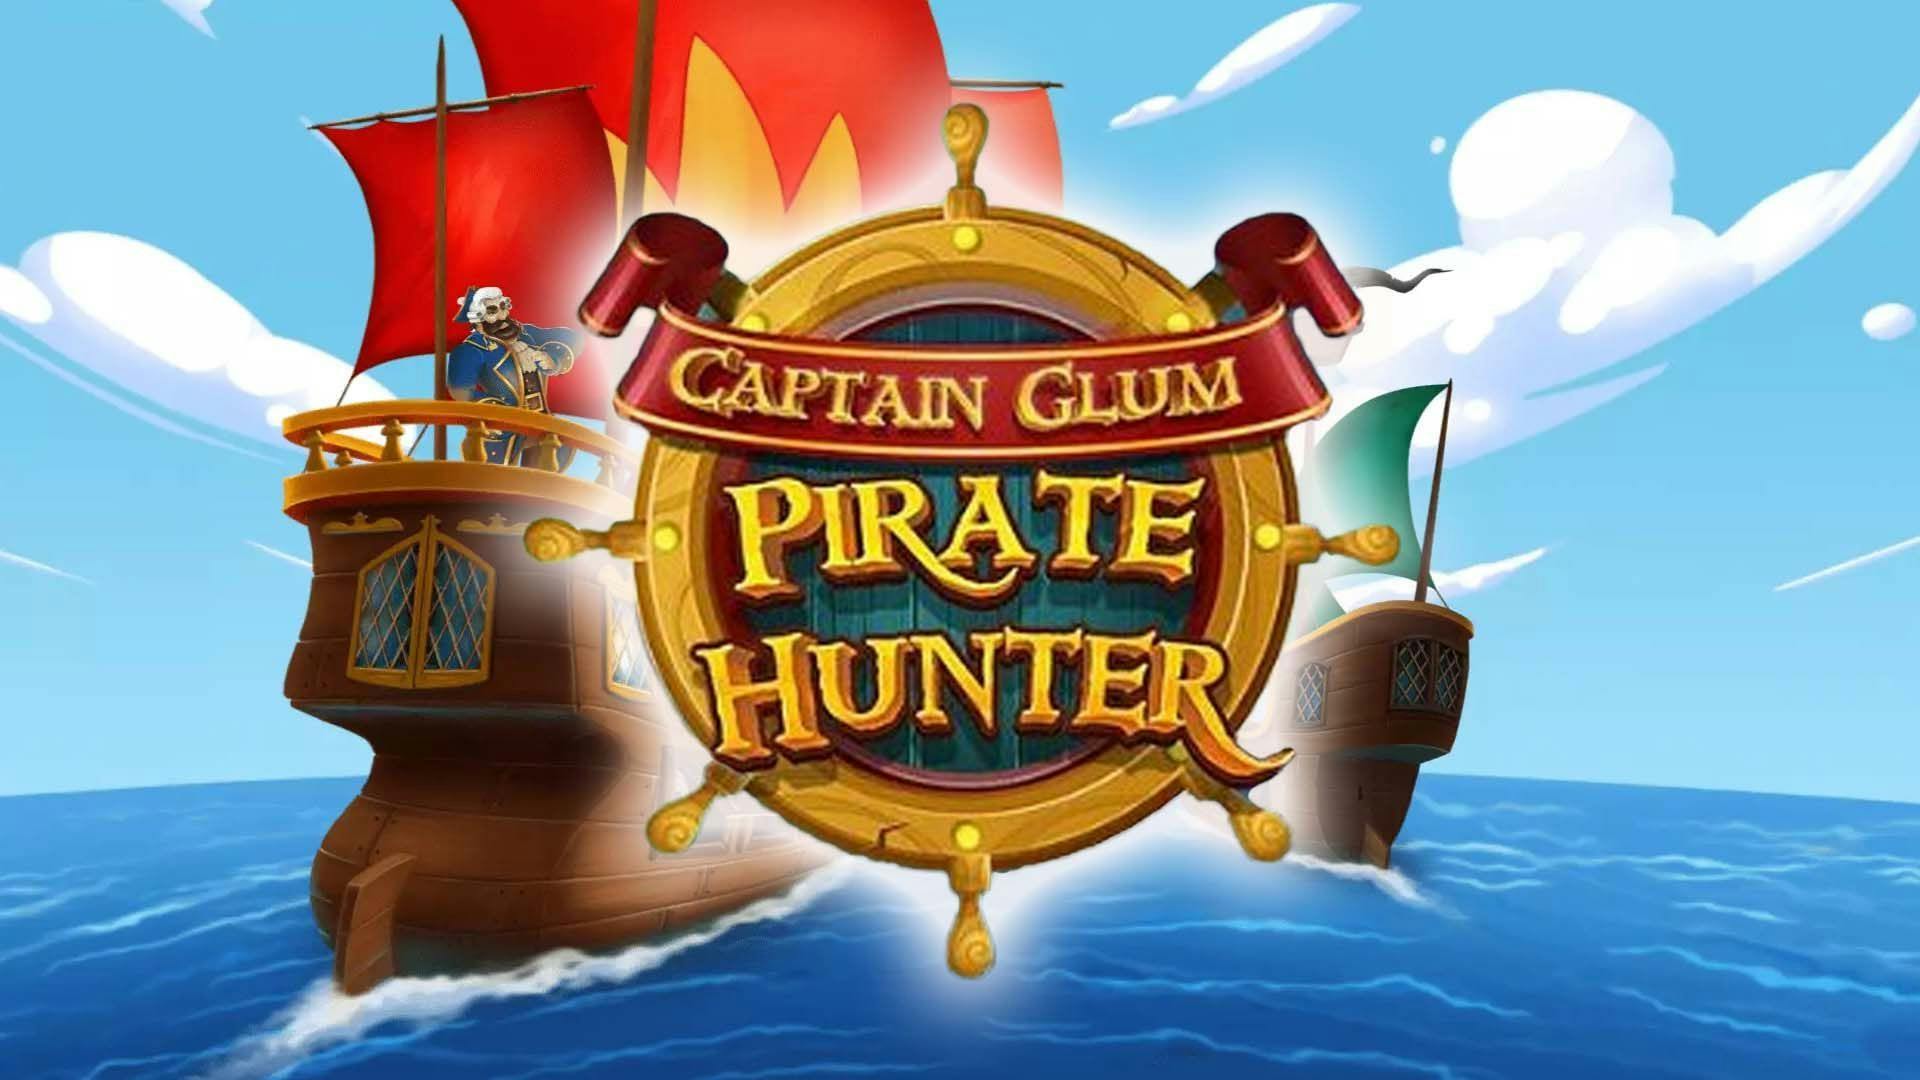 Captain Glum Pirate Hunter Slot Machine Online Free Game Play